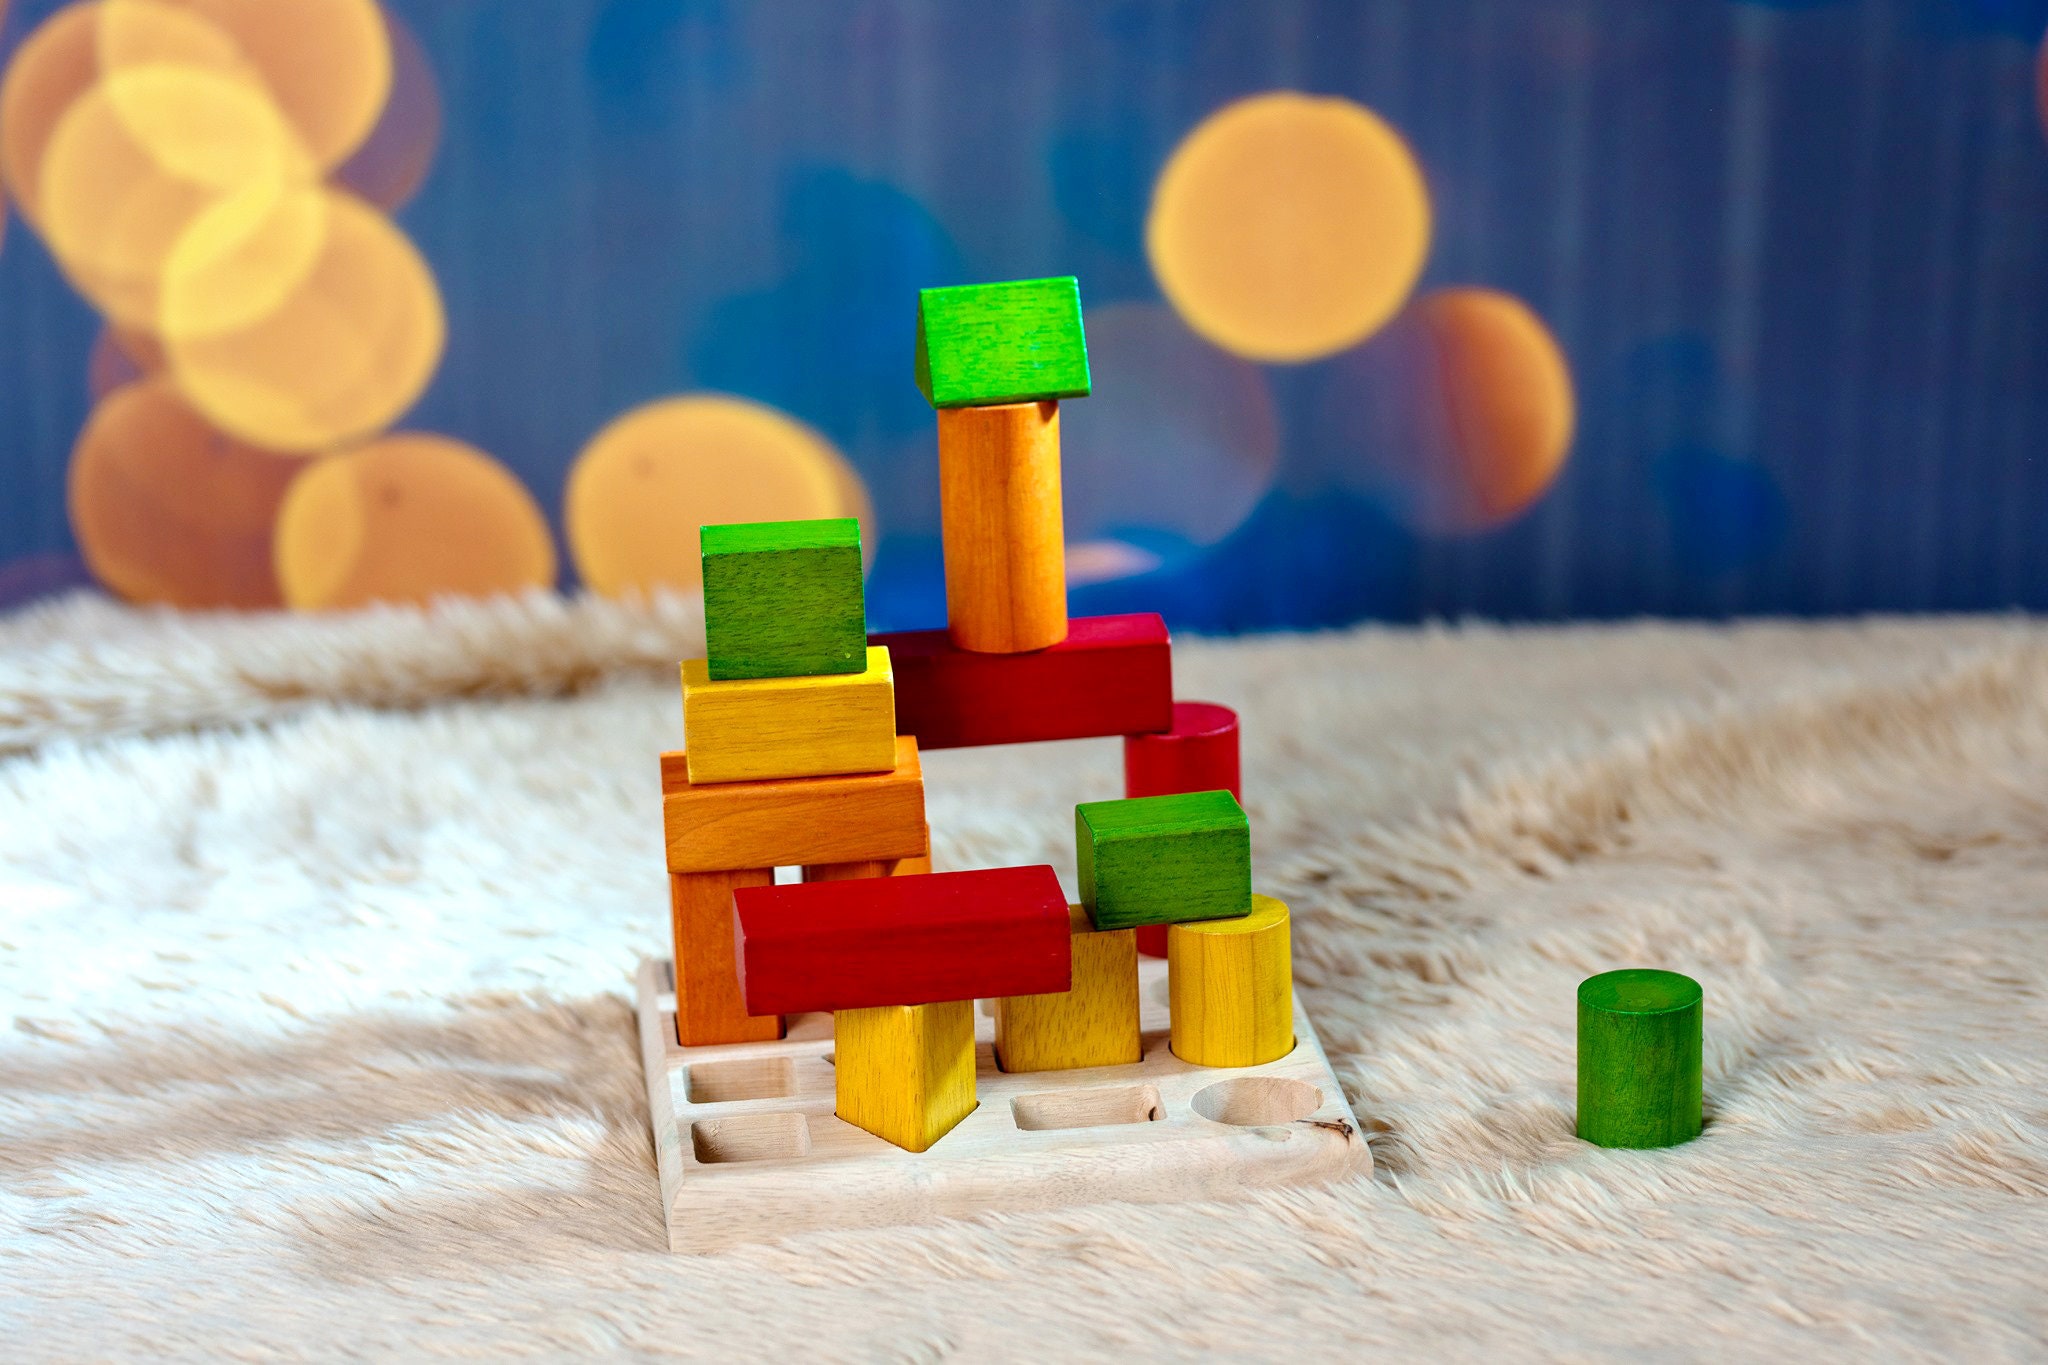 Juguetes Montessori 2 en 1,Juegos Educativos Niños 1 2 3 4 Años,Apilador  Geométrico de